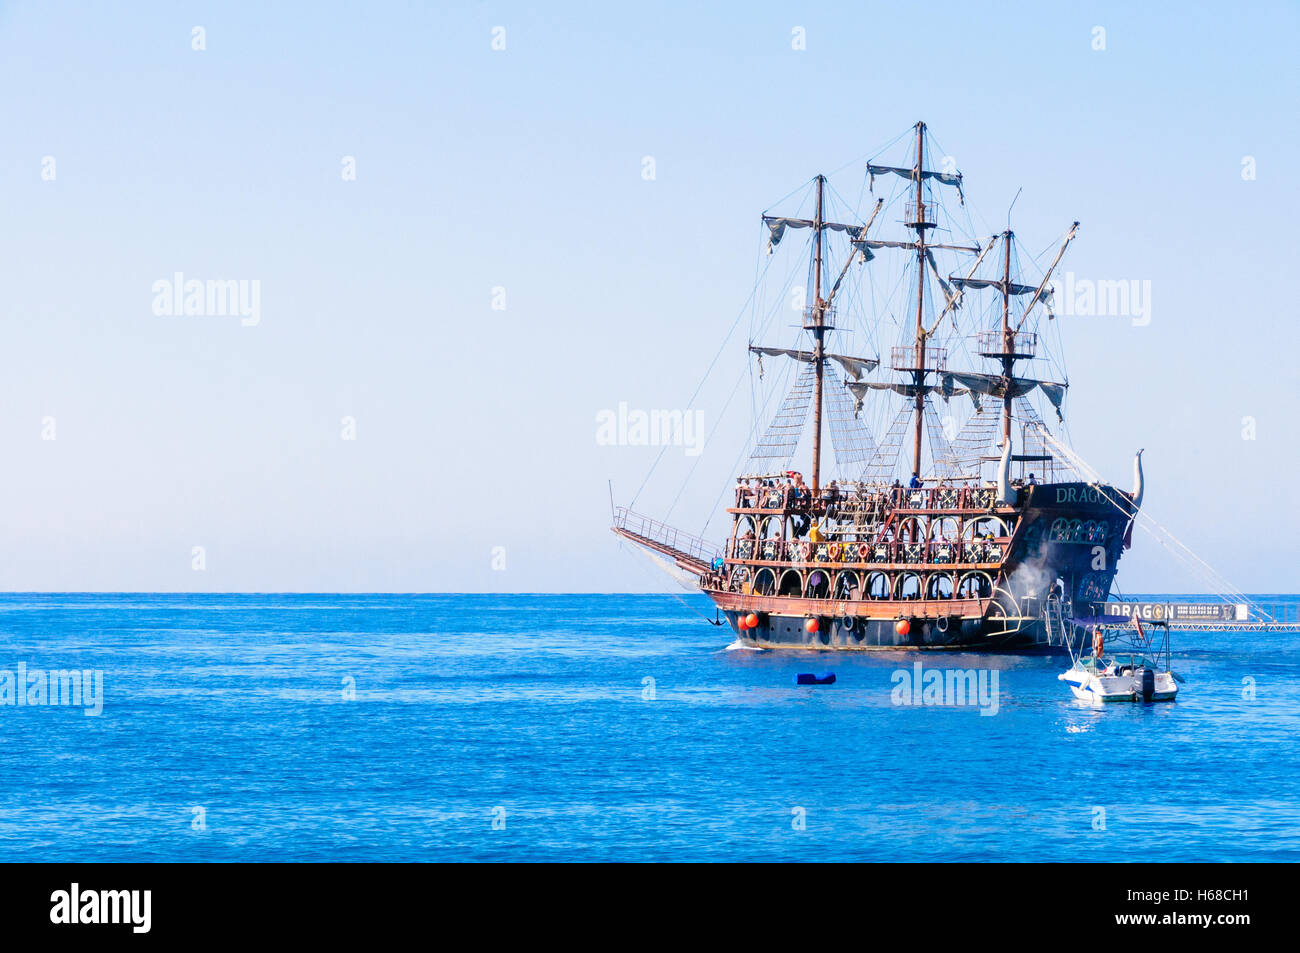 Dragon' soll aussehen wie ein Piratenschiff für Touristen rund um Fethiye  Bucht eine Tour beginnt Stockfotografie - Alamy